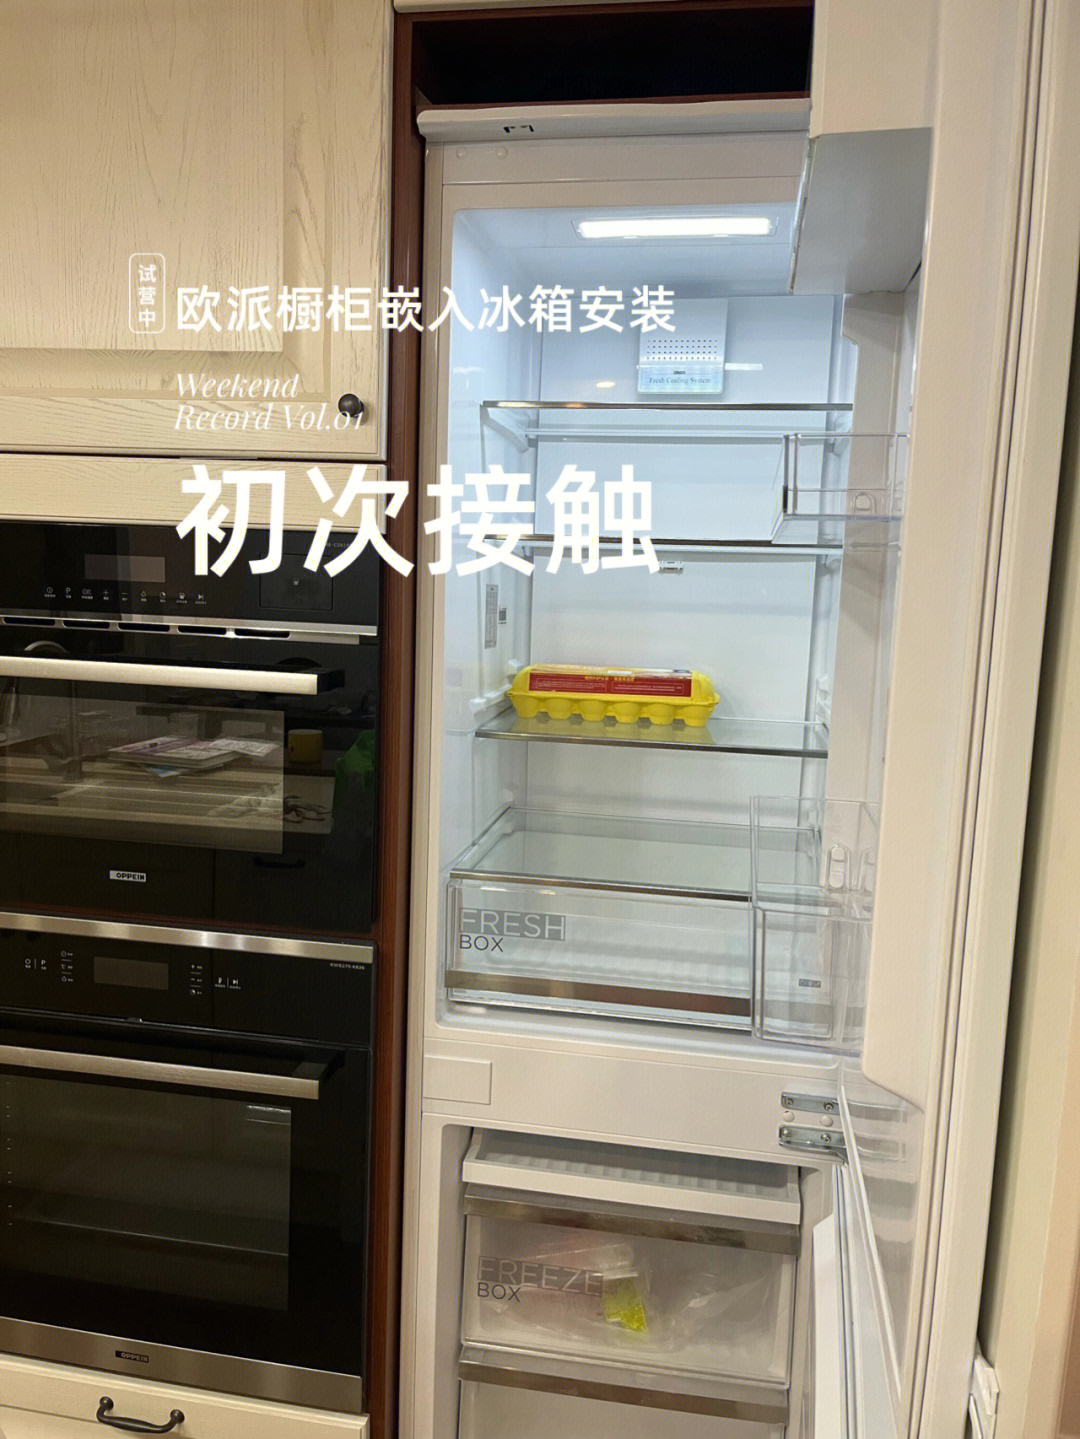 隐藏式冰箱安装图解图片